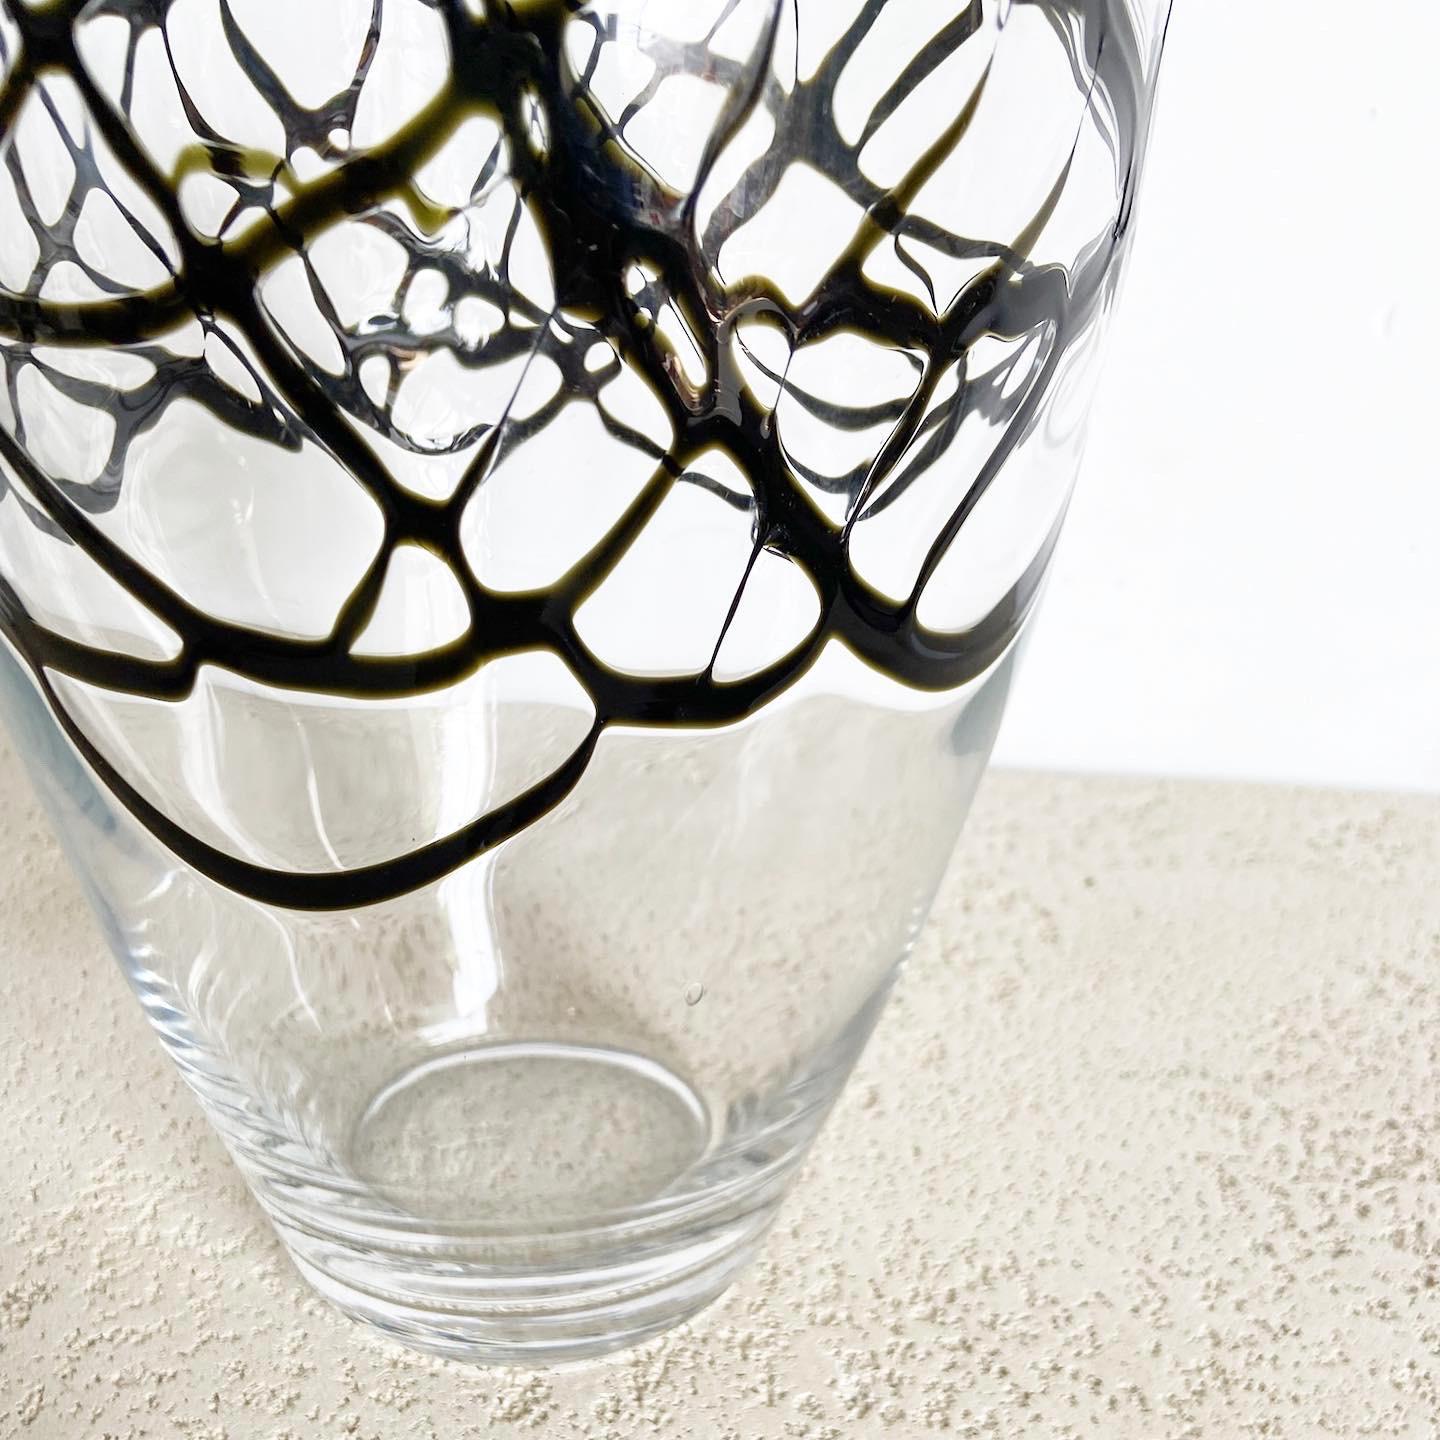 Diese postmoderne abstrakte Glasvase ist eine beeindruckende Mischung aus avantgardistischem Design und hochwertiger Handwerkskunst. Die unregelmäßige Form aus mundgeblasenem Glas widersetzt sich der traditionellen Symmetrie und macht sie zu einem